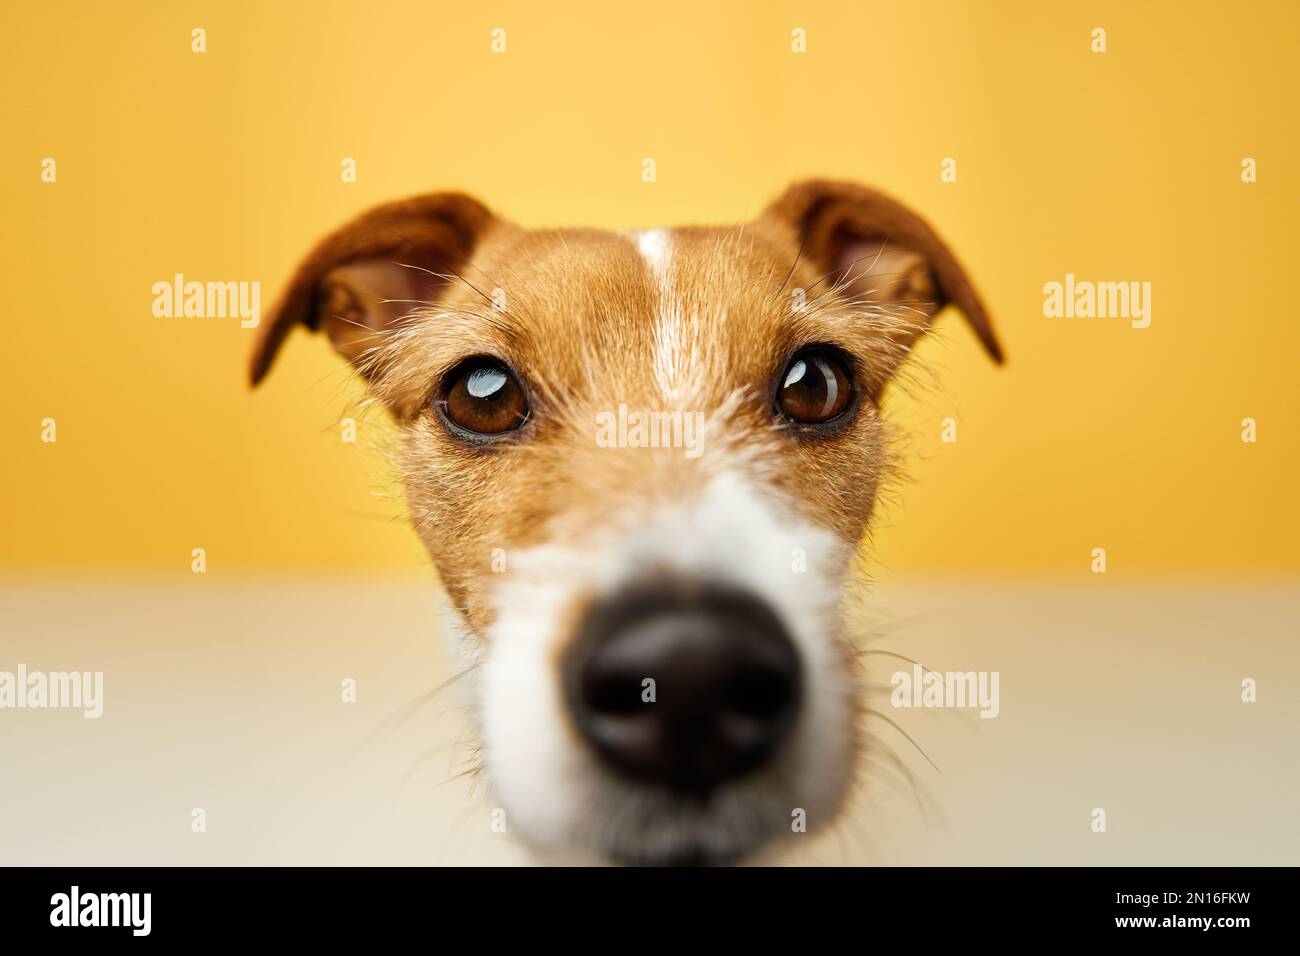 Curieux chien intéressé regarde dans l'appareil photo. Jack russell terrier portrait de près sur fond jaune. Animal de compagnie drôle Banque D'Images